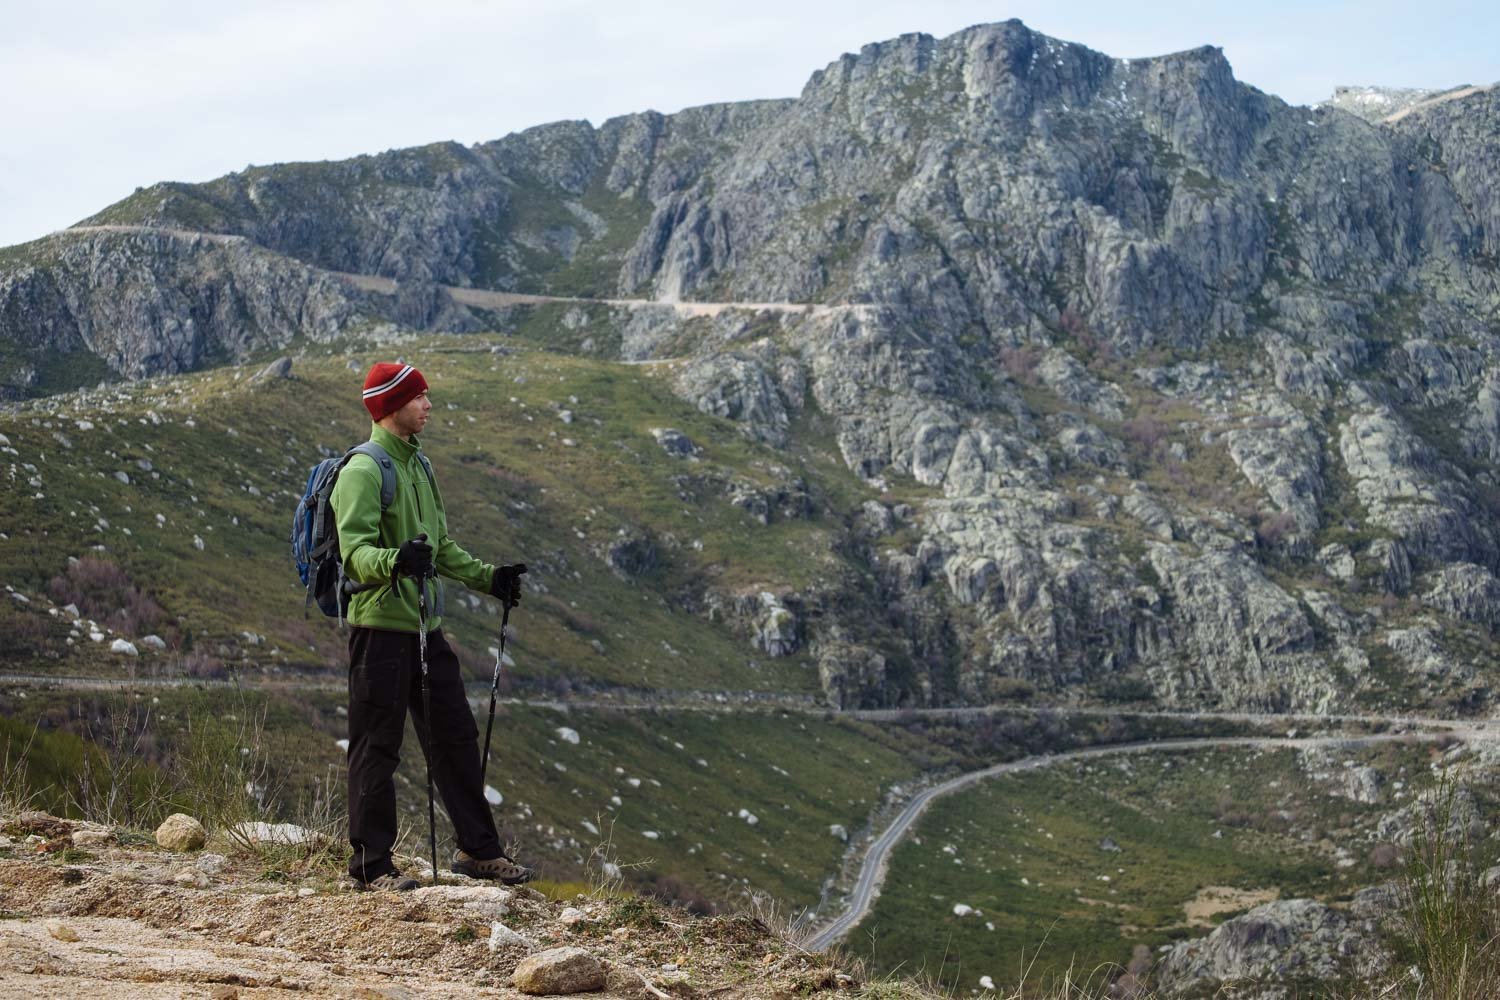 Serra da Estrela - Trekking and mountaineering